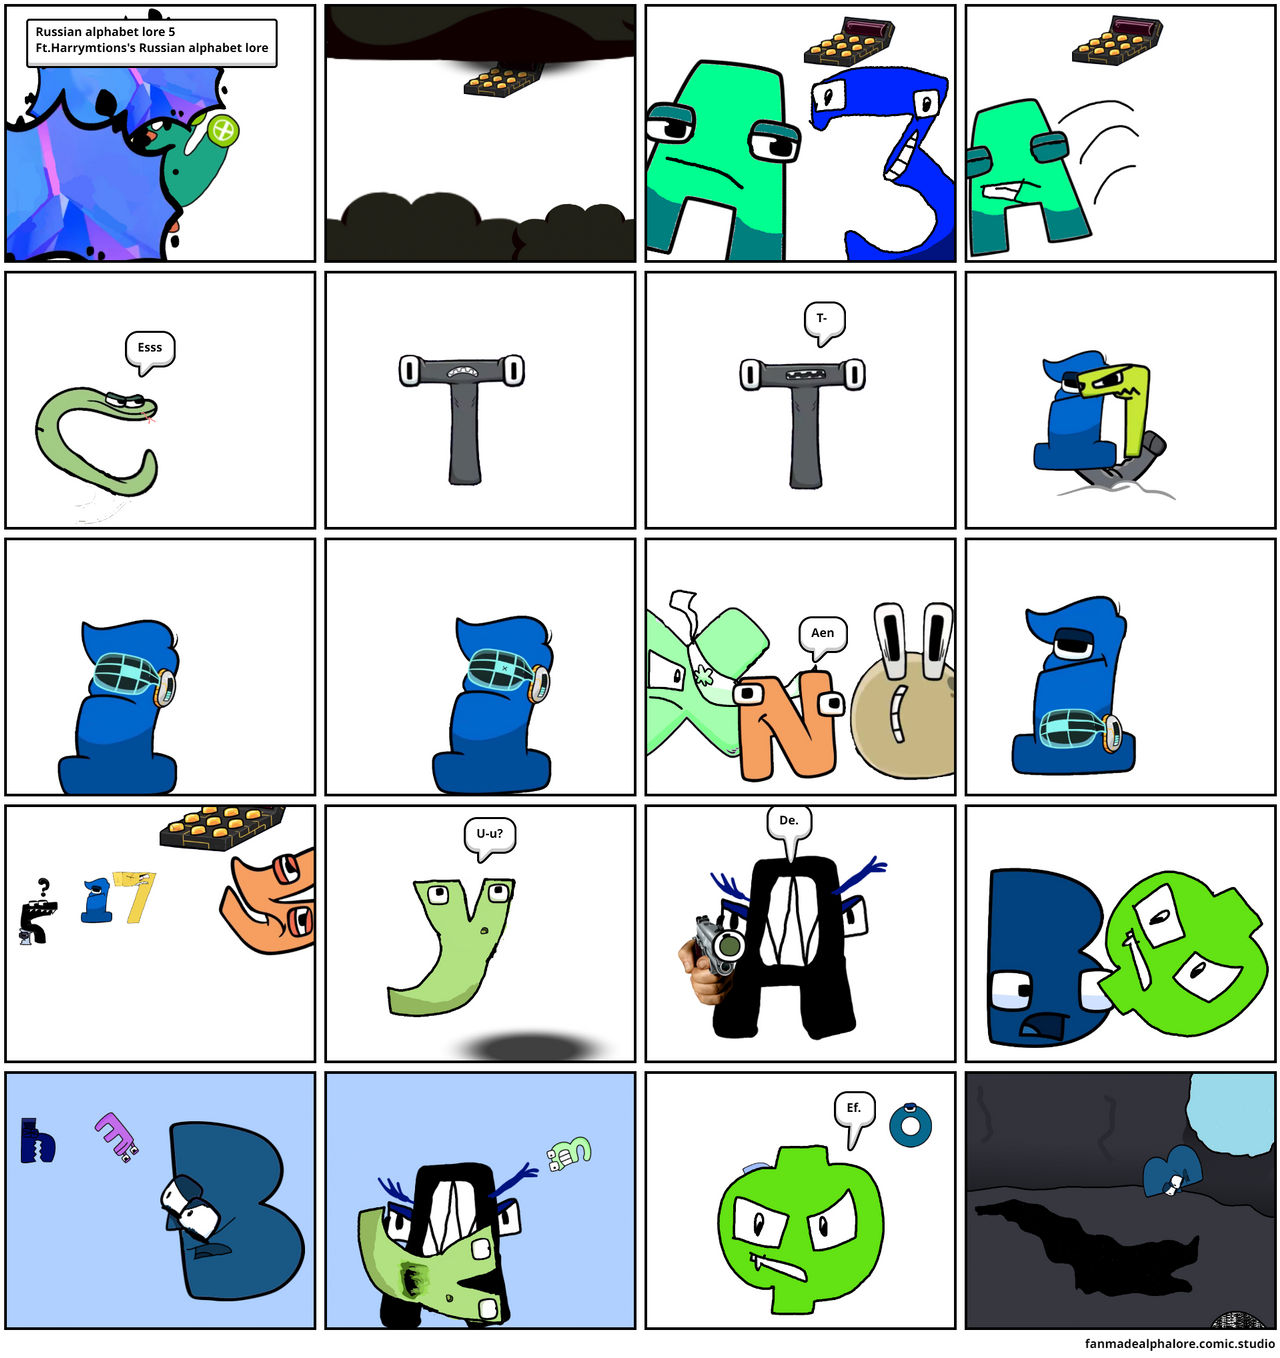 Cringe alphabet lore thing - Comic Studio